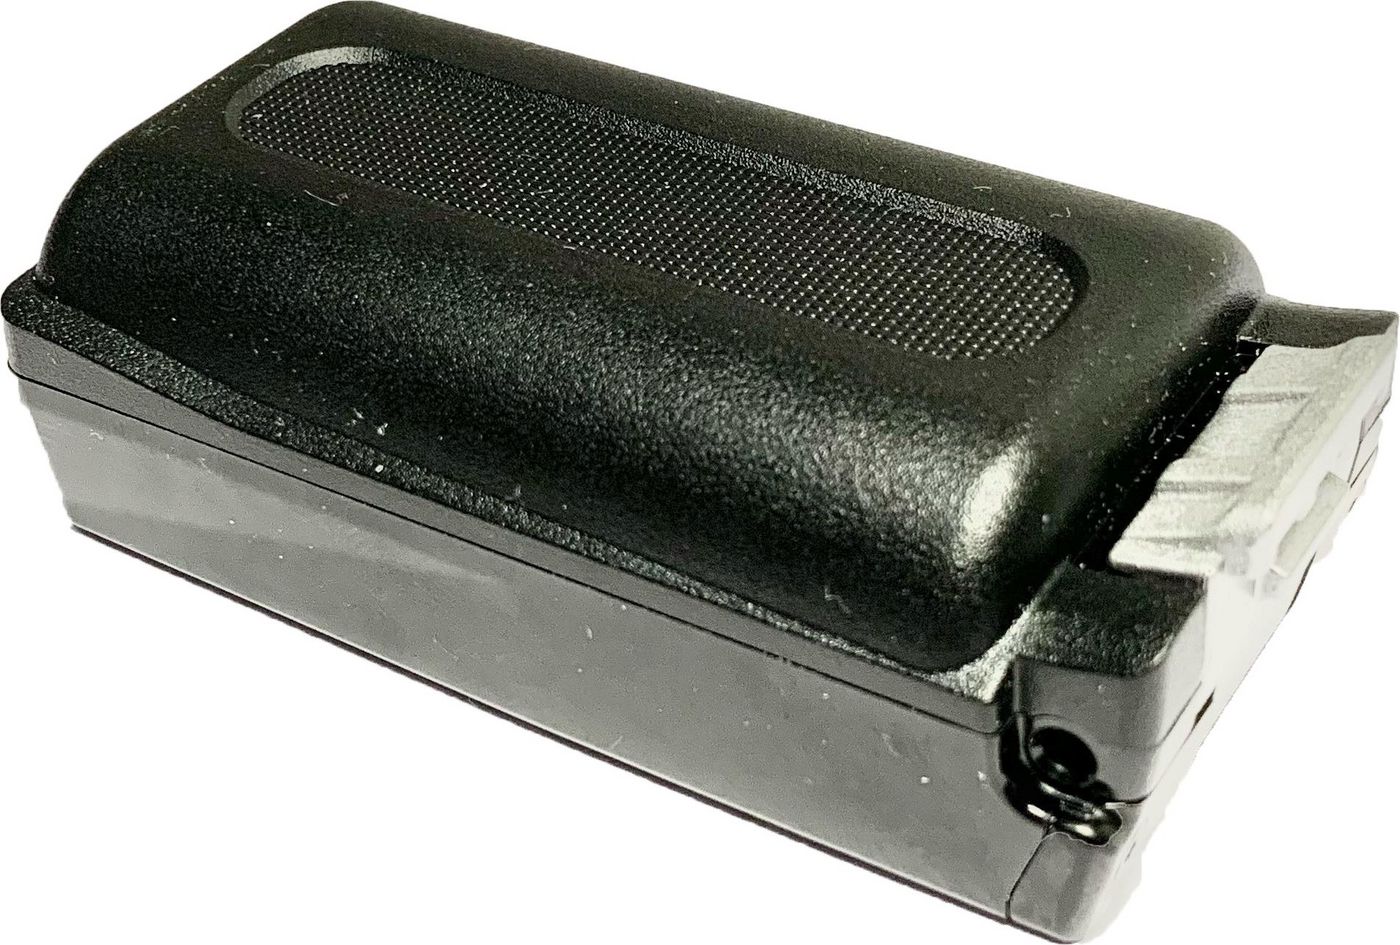 DATALOGIC - Handheld-Batterie (erweitert) - 1 x Lithium-Ionen 6200 mAh 22.1 Wh - für Skorpio X5 (Pis